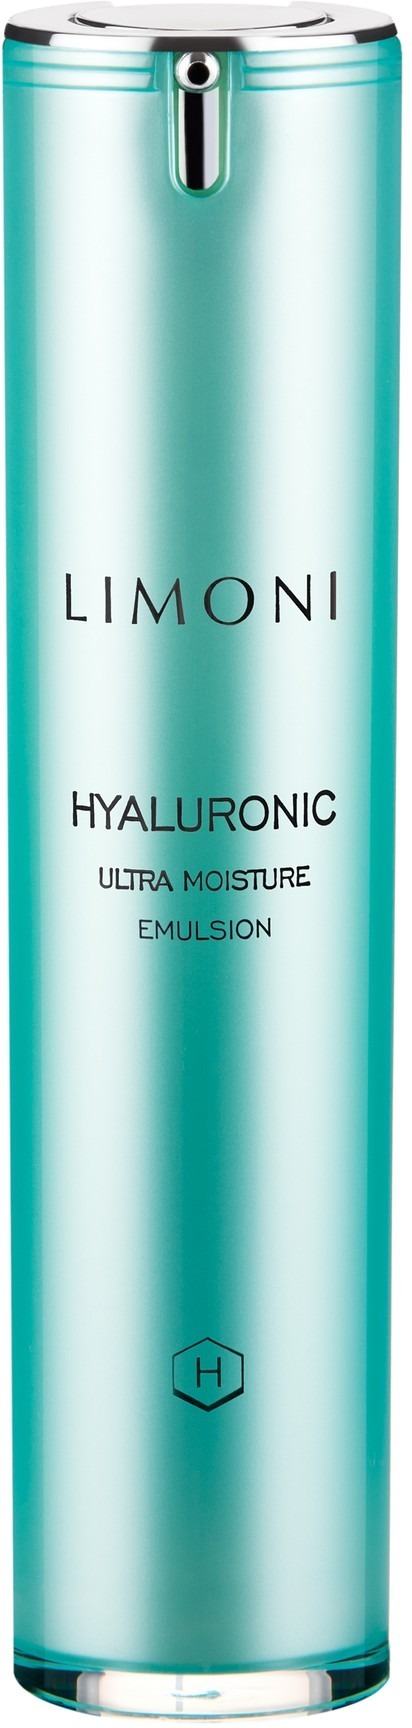 Limoni Hyaluronic Ultra Moisture Emulsion